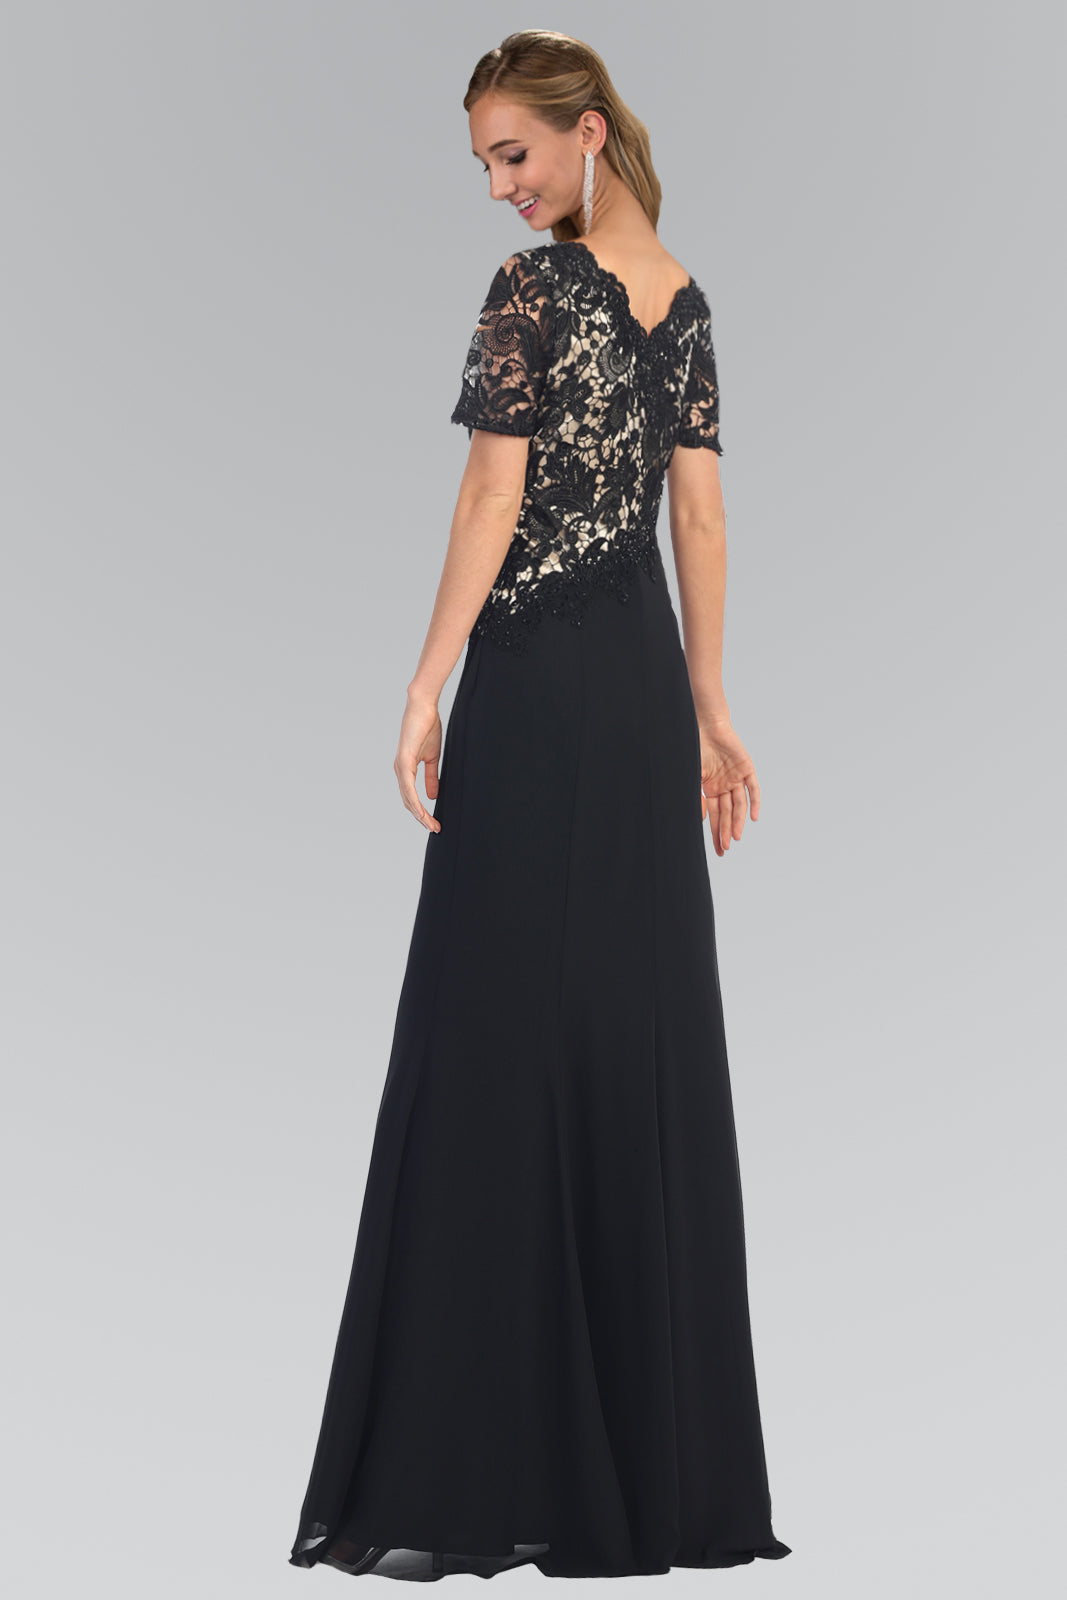 Mother of the Bride Long Dress Formal - The Dress Outlet Elizabeth K black gold